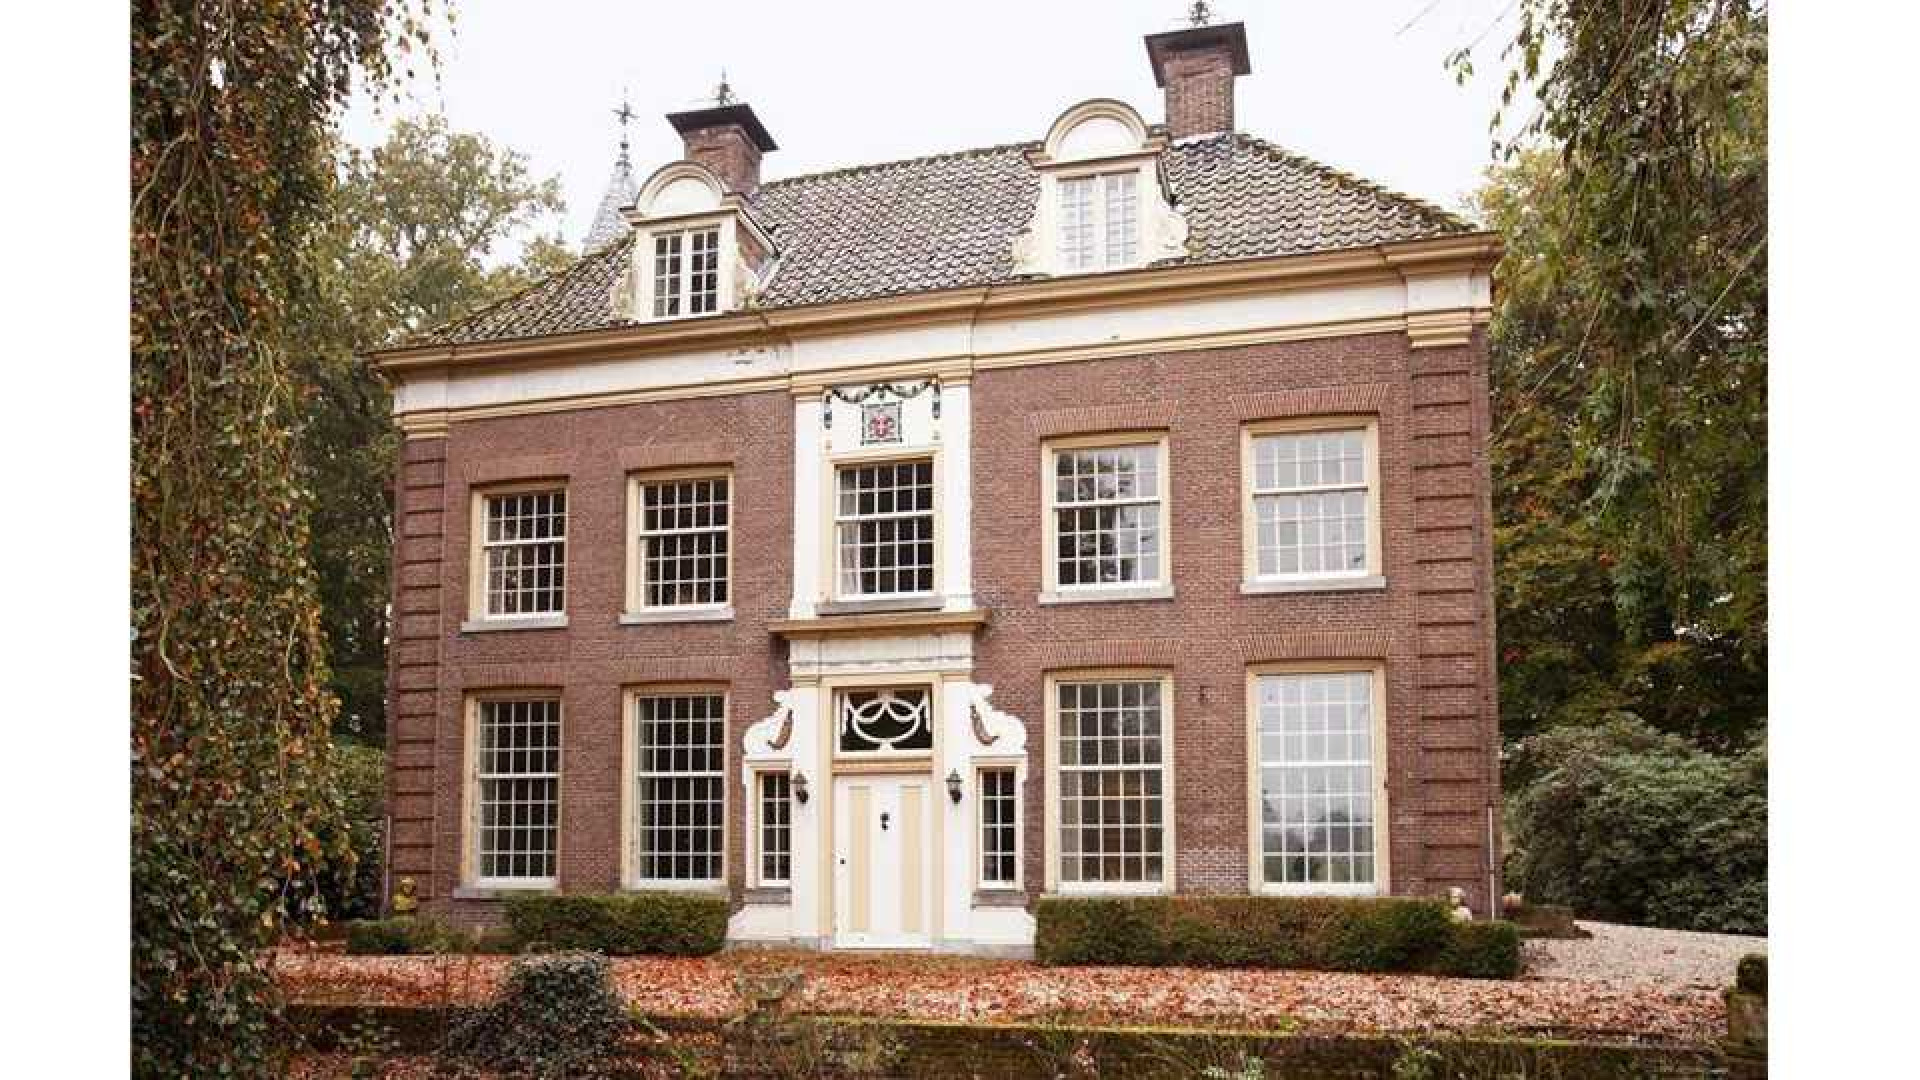 Oud PvdA topman Marcel van Dam verruilt riant landhuis voor eeuwenoud kasteel. Zie foto's 5